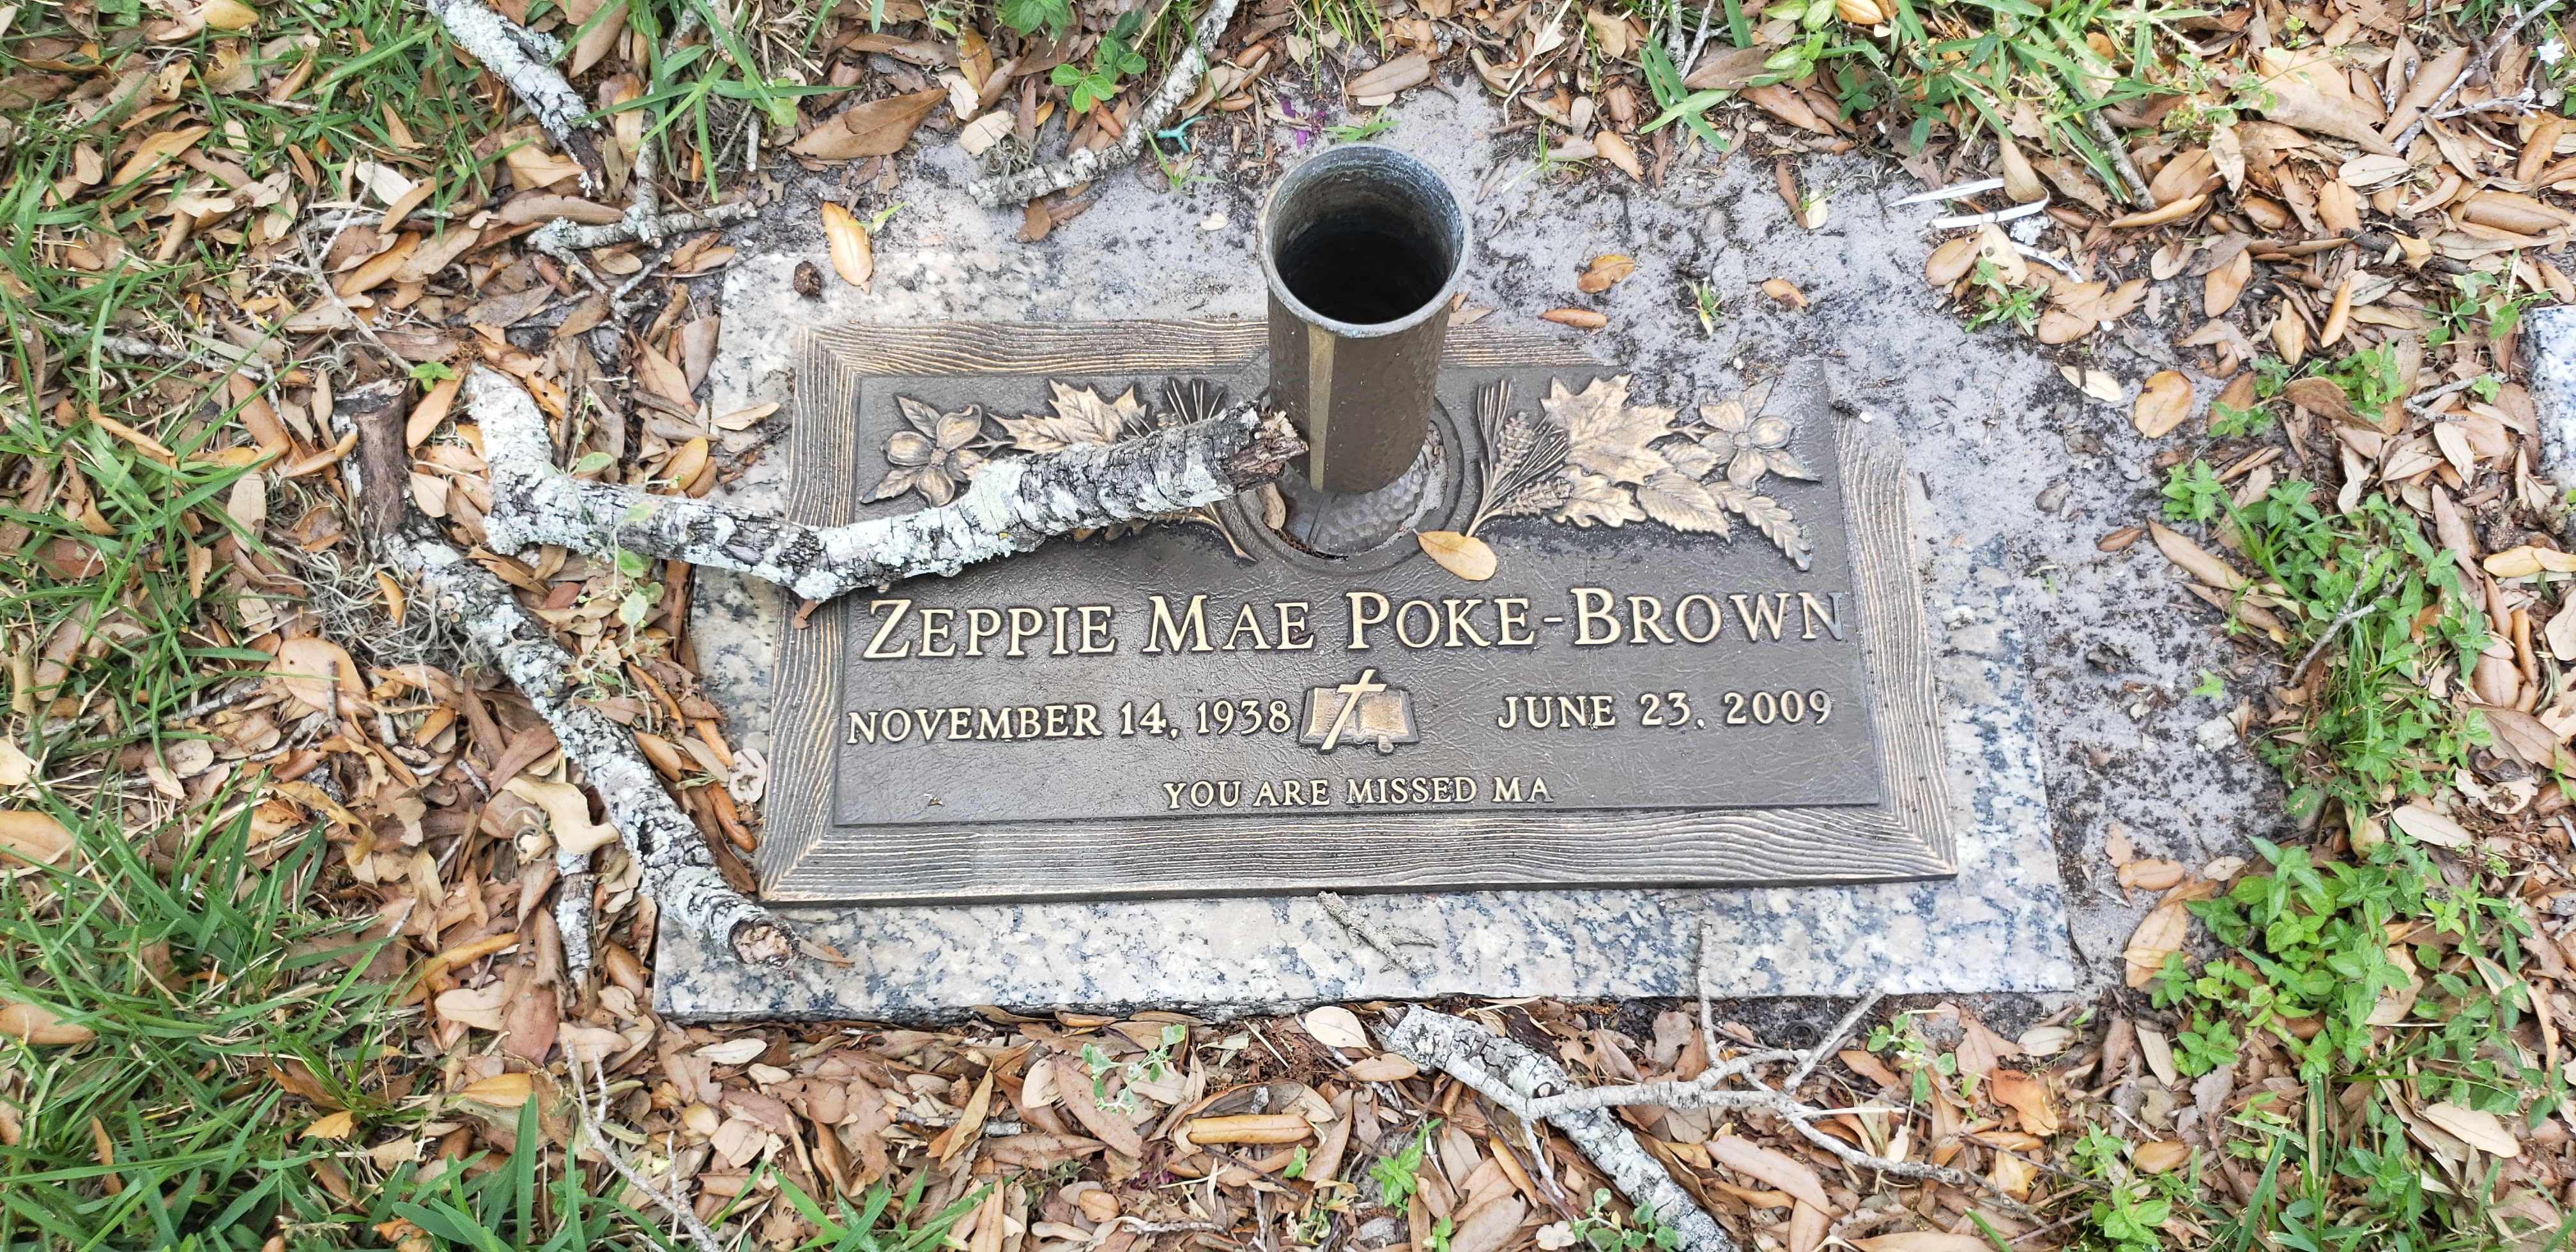 Zeppie Mae Poke-Brown